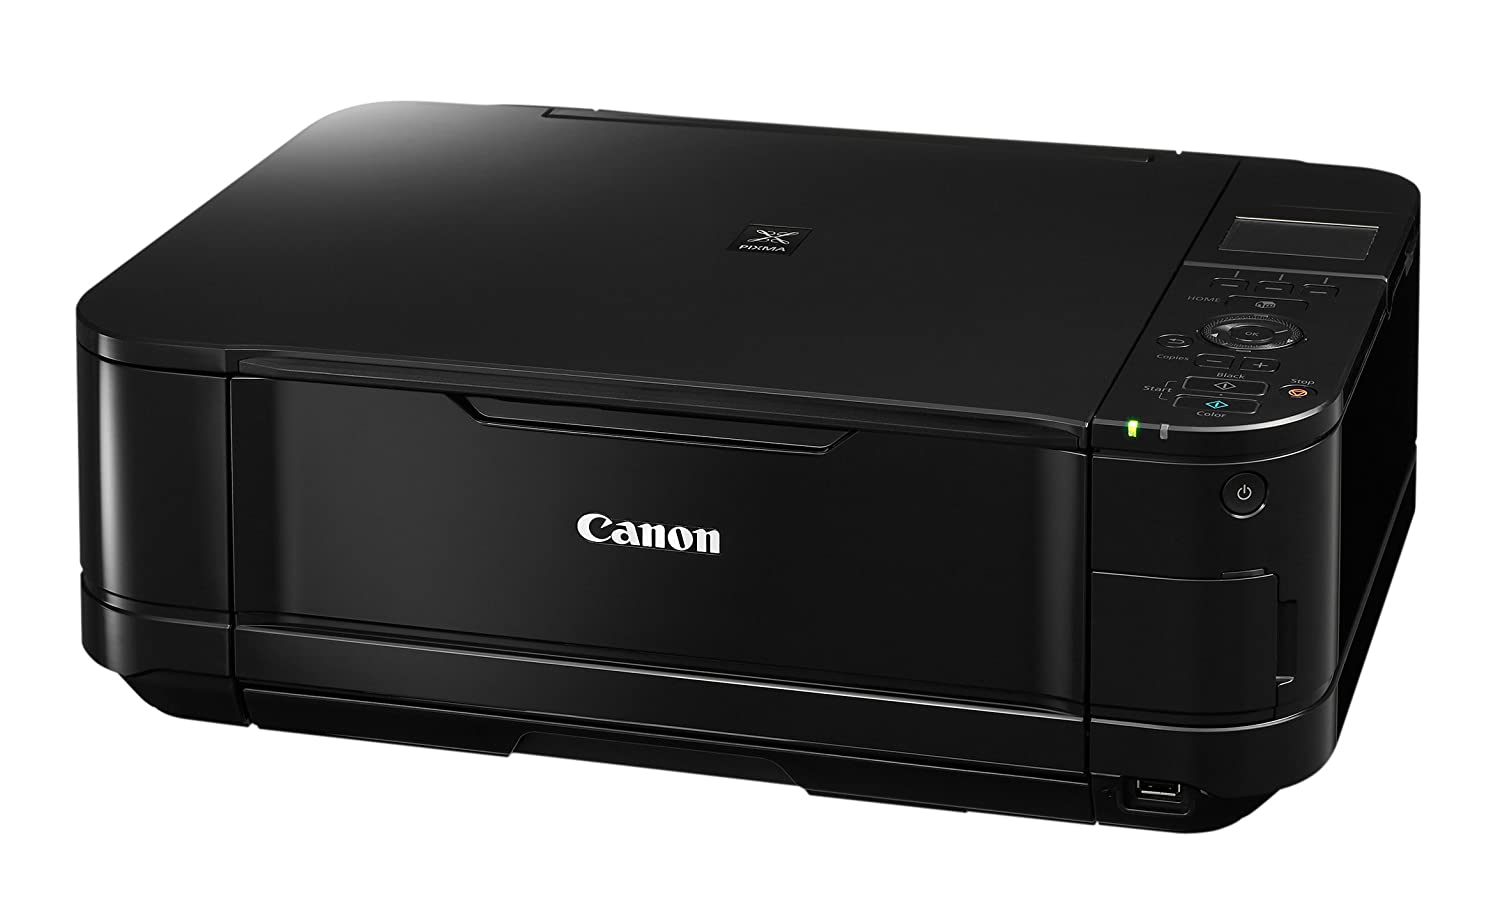 canon 4100 printer driver for mac